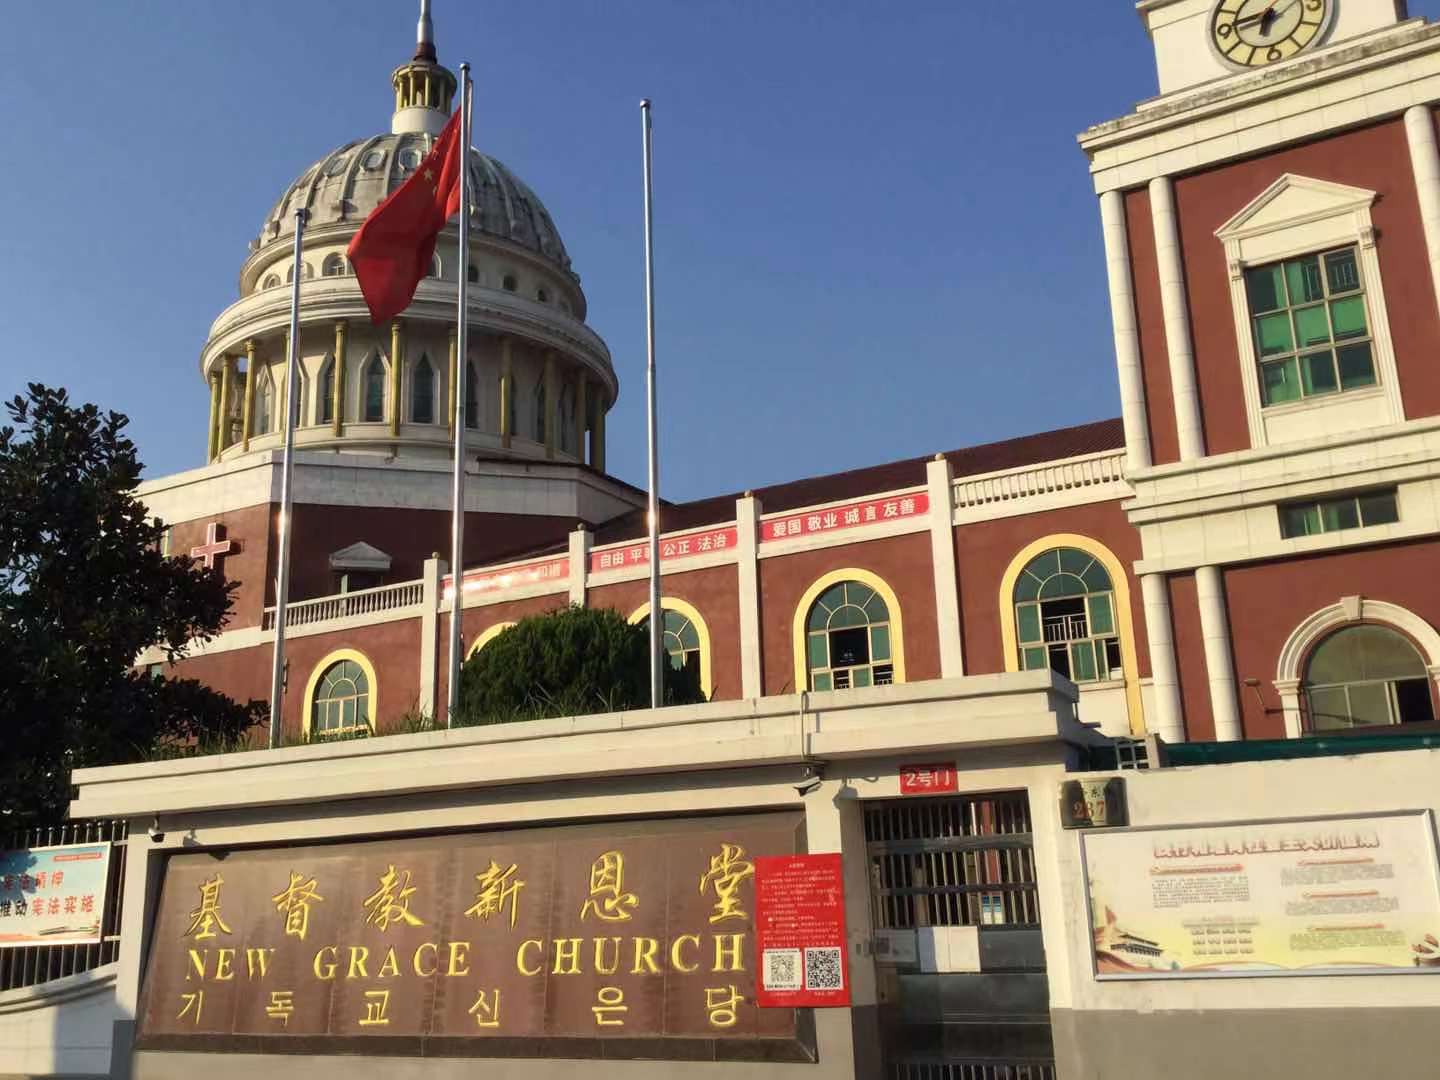 New Grace Church in Yiwu, Zhejiang